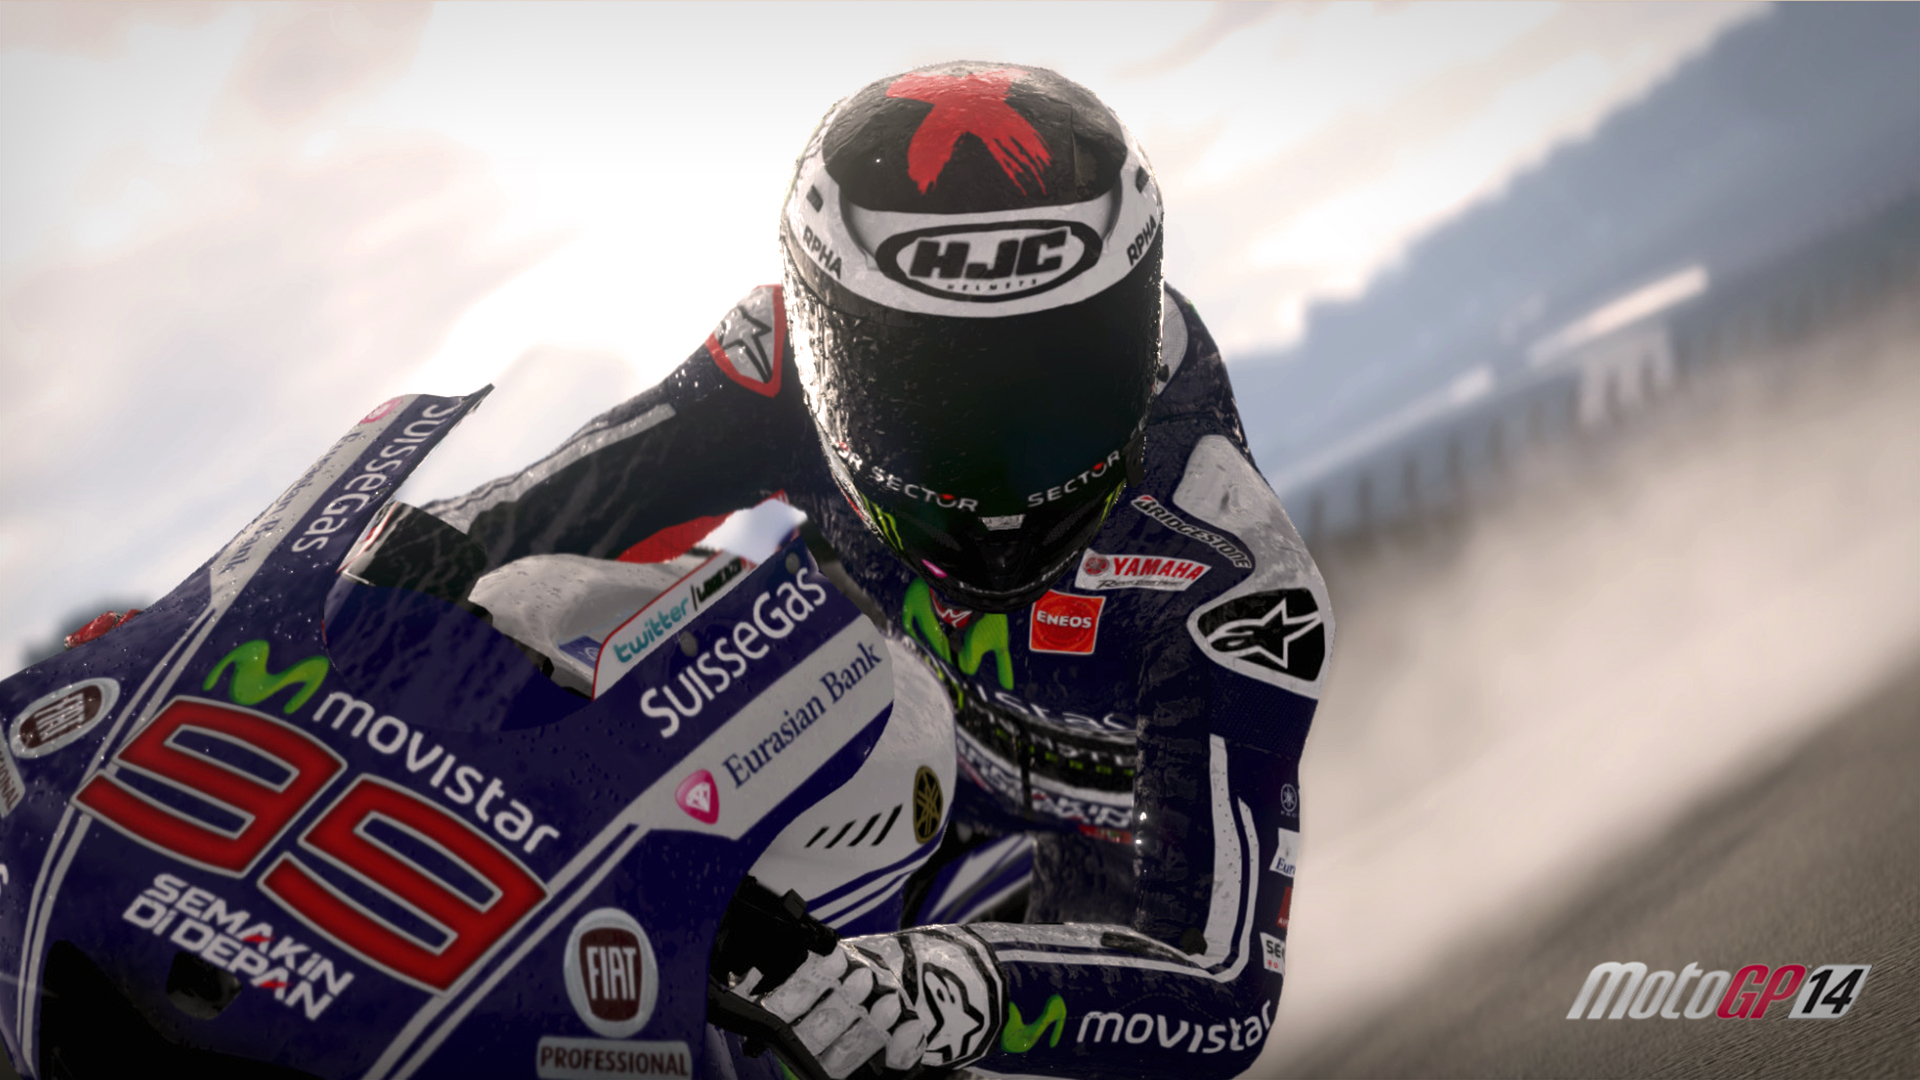 MotoGP14 Donington Park British Grand Prix DLC screenshot